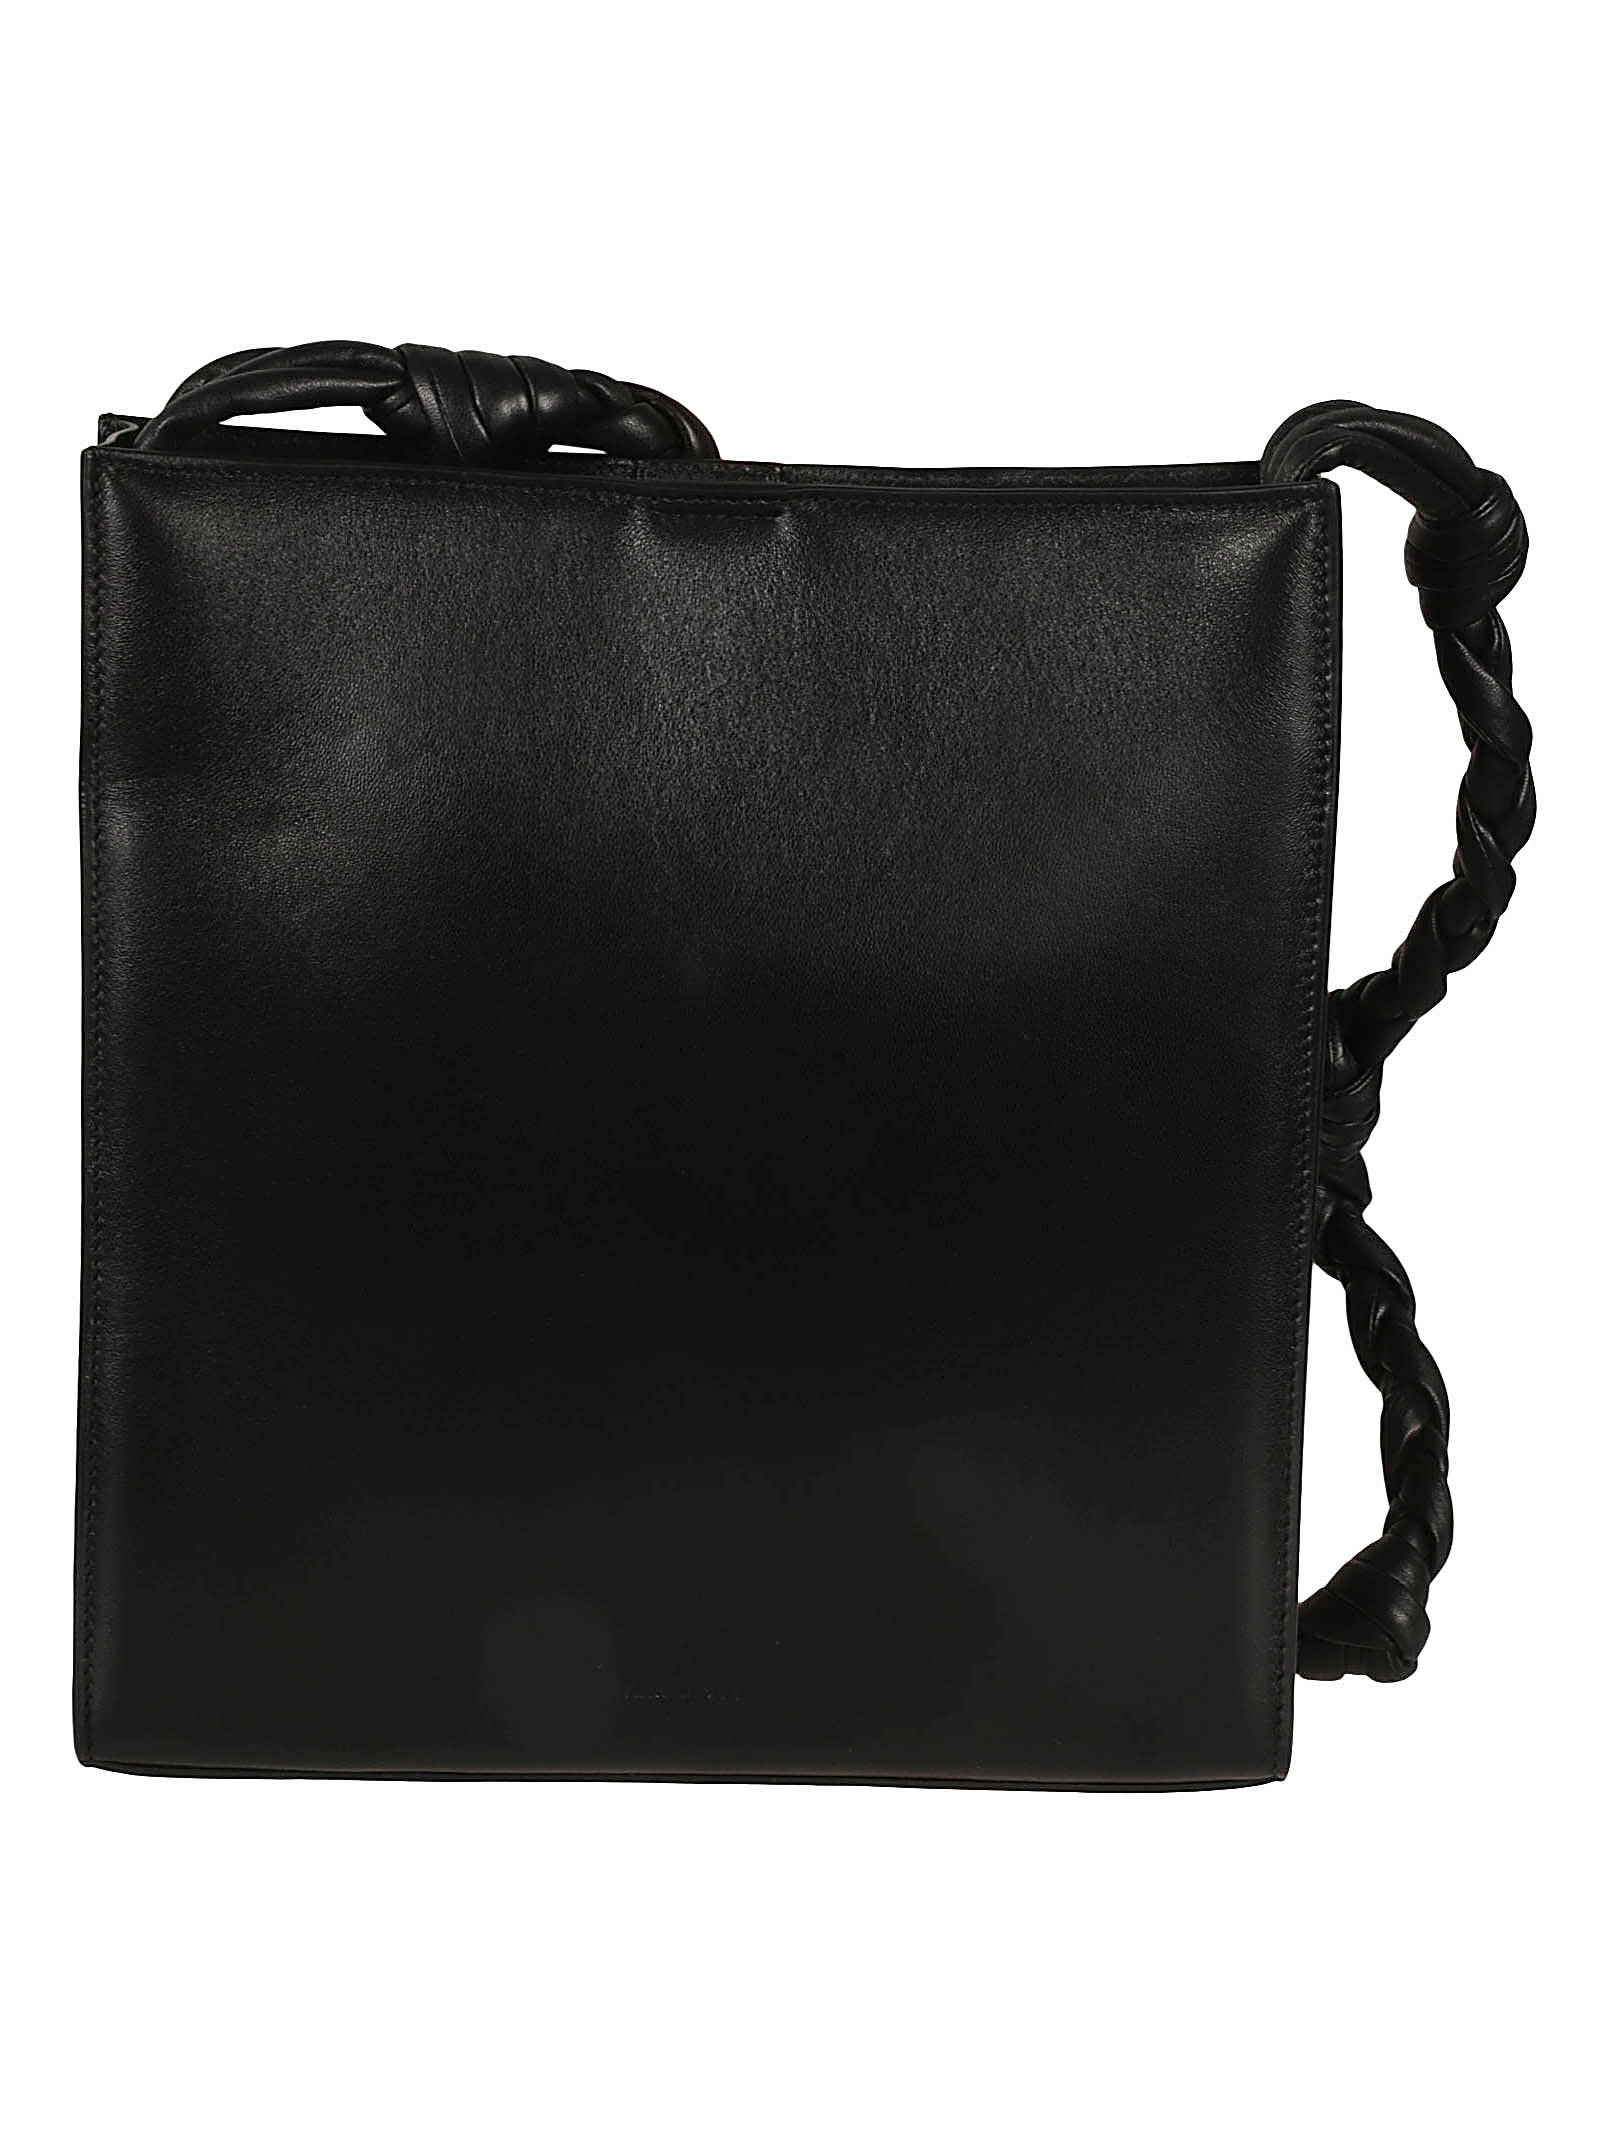 Jil Sander Leather Shoulder Strap In Black/grey